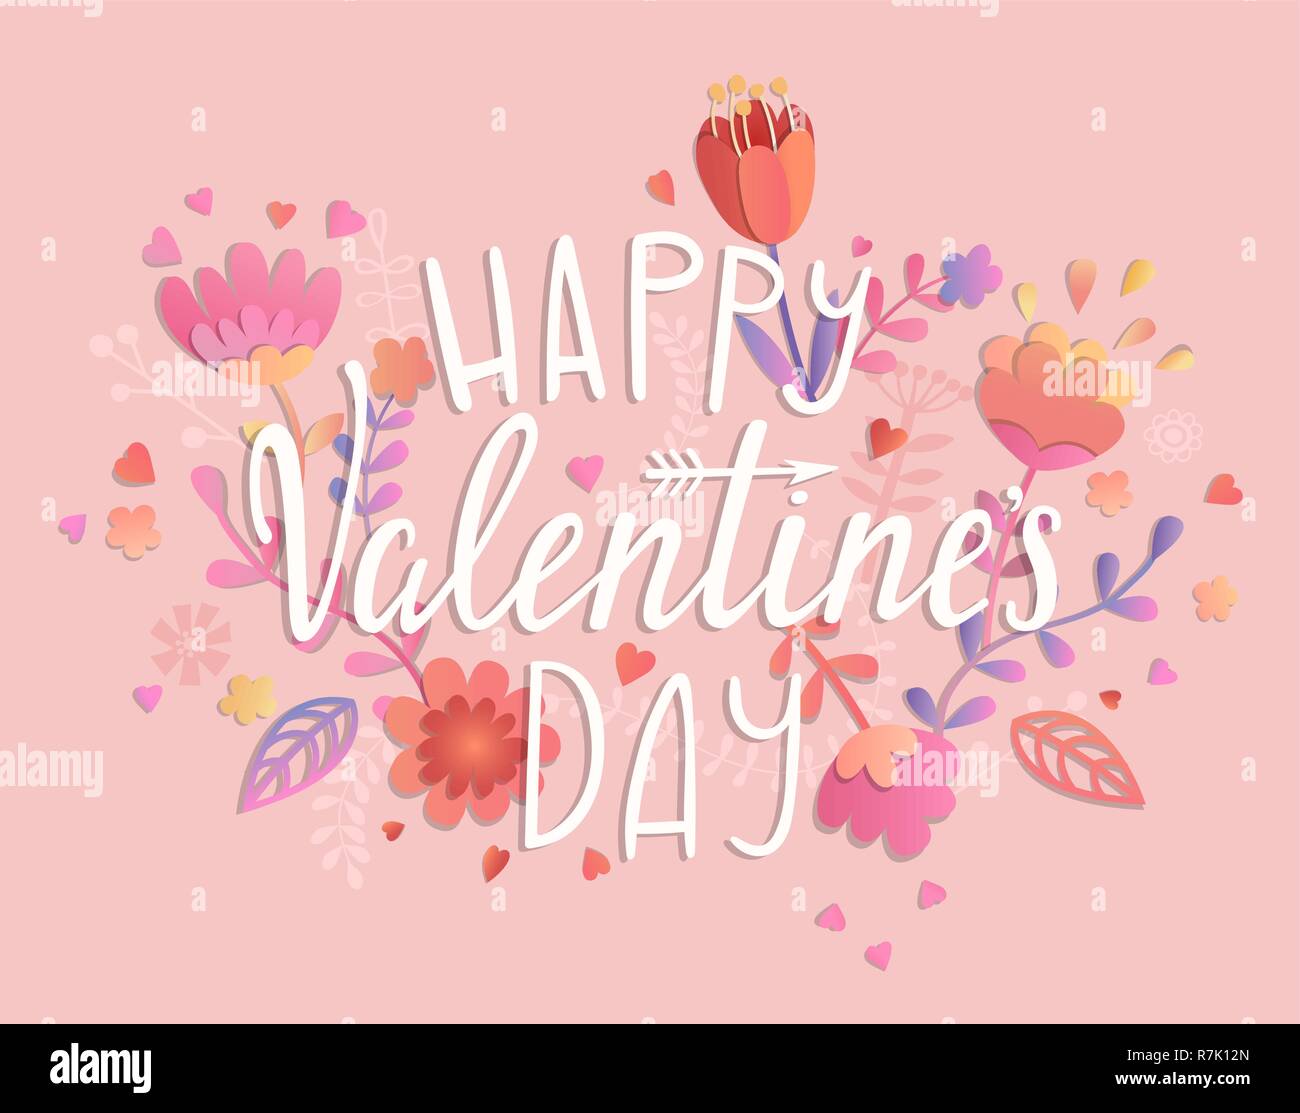 Happy Valentines Day card sur fond rose avec l'ornement floral. Message d'affiches, brochures, bannières, invitation. Vector illustration. Illustration de Vecteur